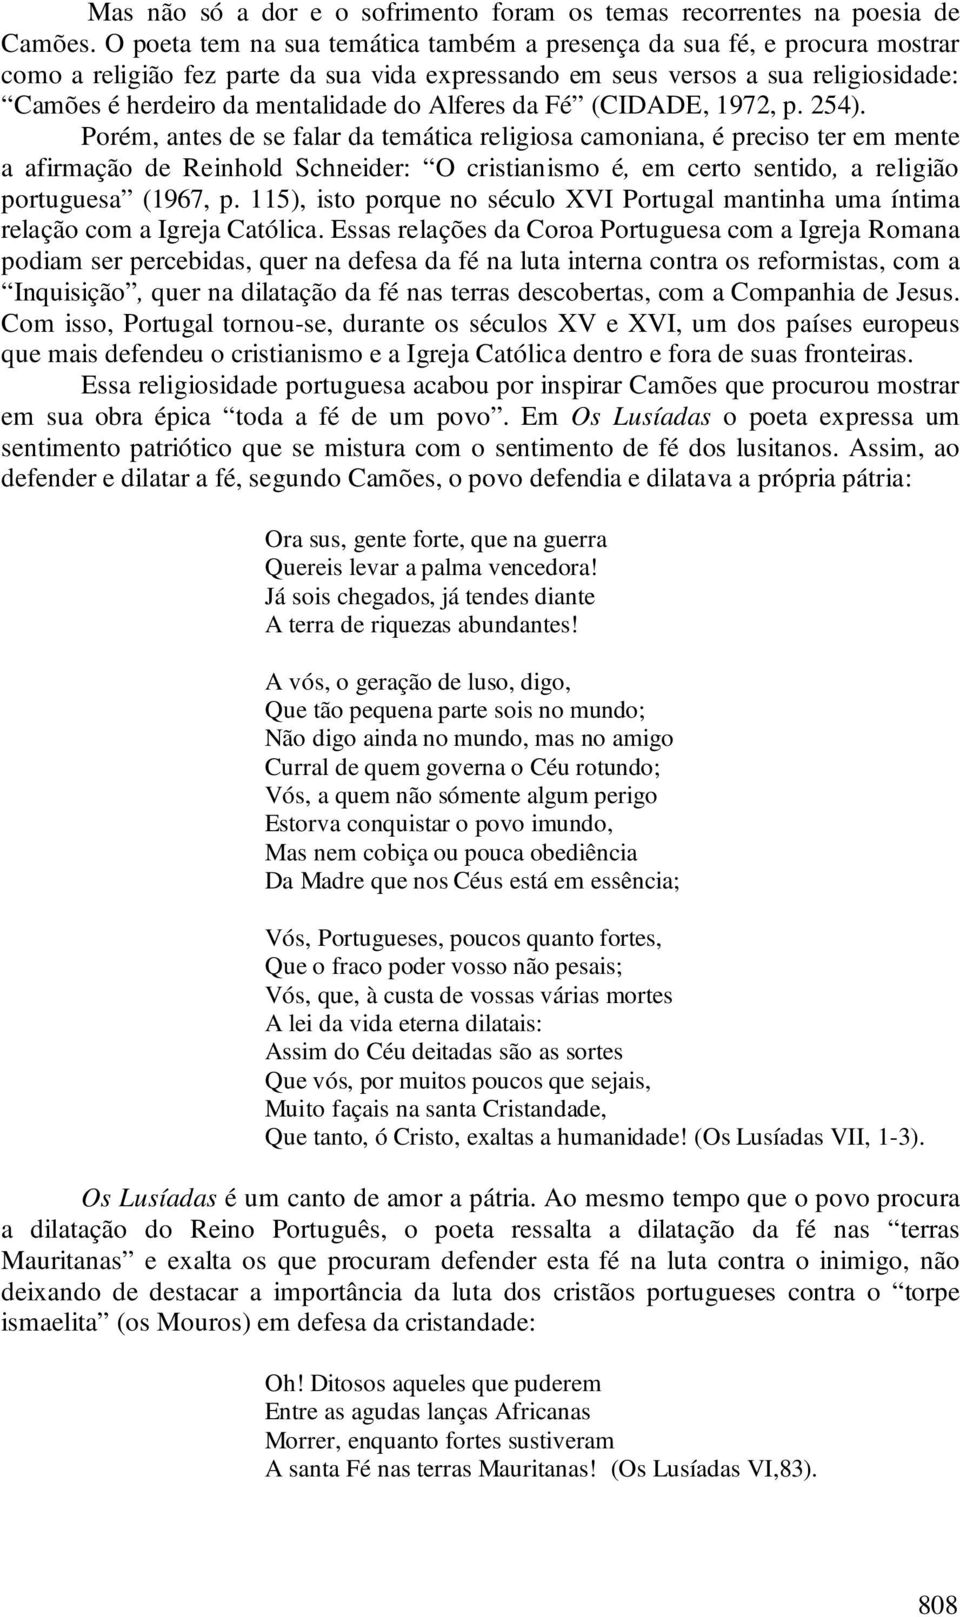 Alferes da Fé (CIDADE, 1972, p. 254).